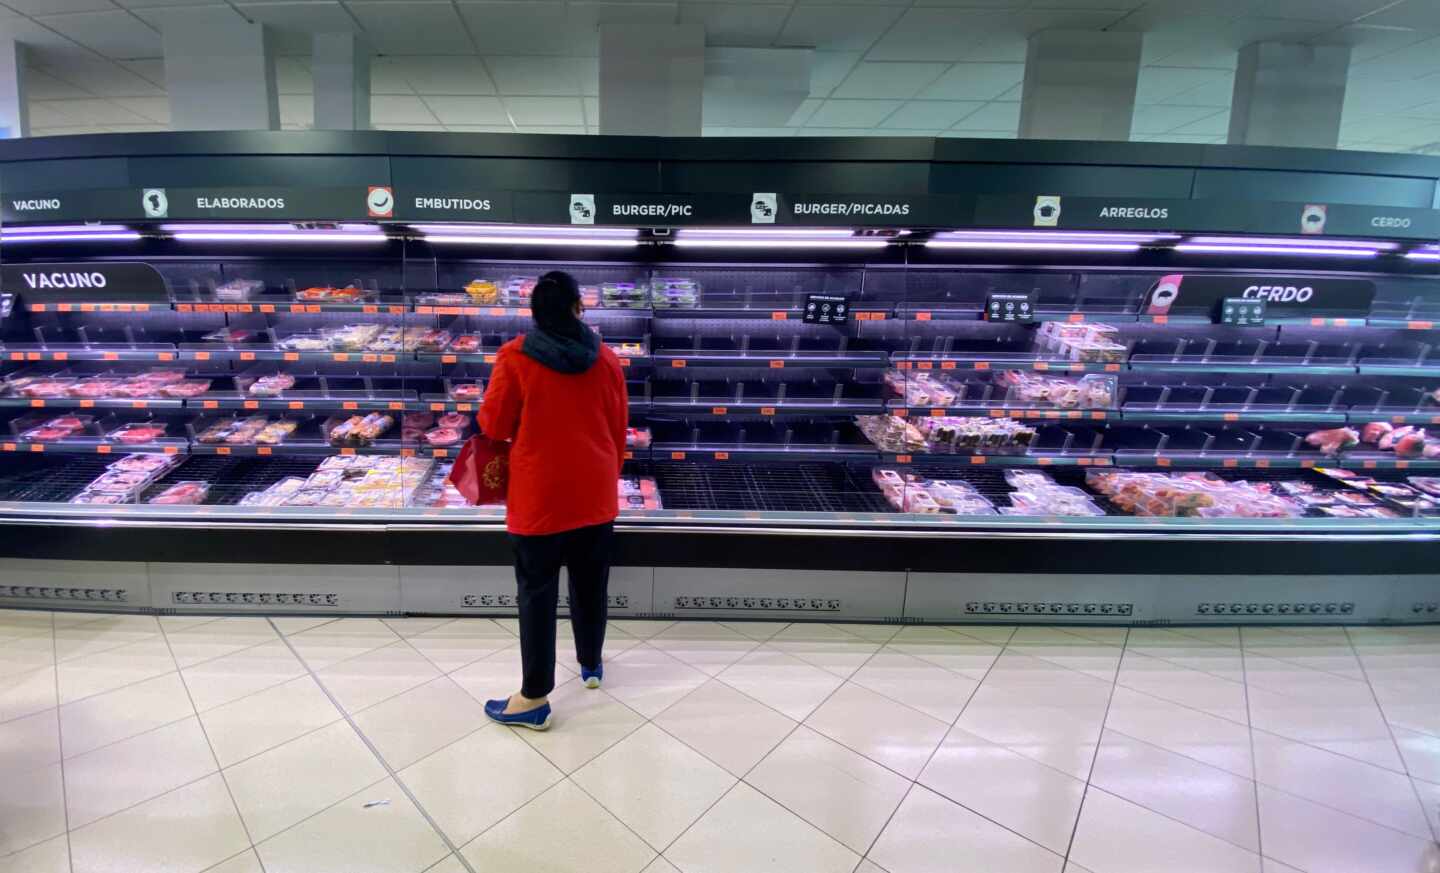 Una mujer observa los alimentos que quedan en los refrigeradores de carne de un supermercado un día marcado por colas de gente deseosas de hacer acopio de alimentos y otros productos debido al avance del coronavirus.